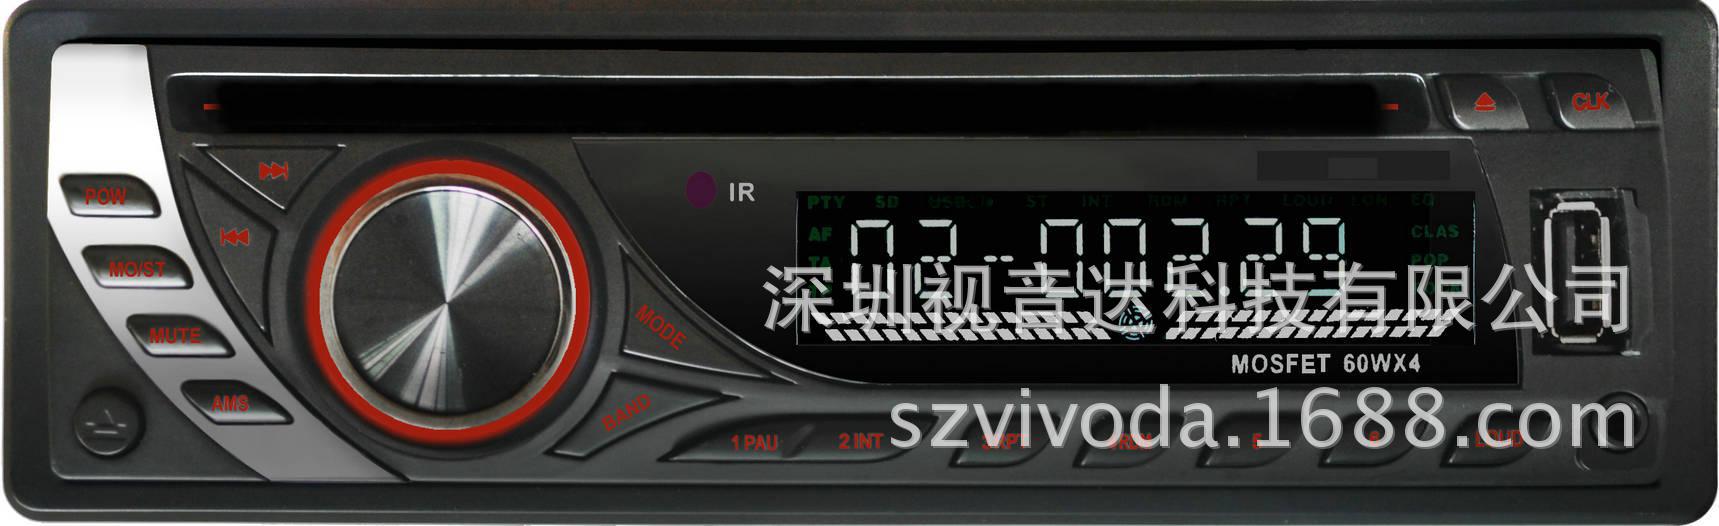 厂家直销车载DVD 车载影碟机 单锭DVD V-570(可拆） MP3播放器